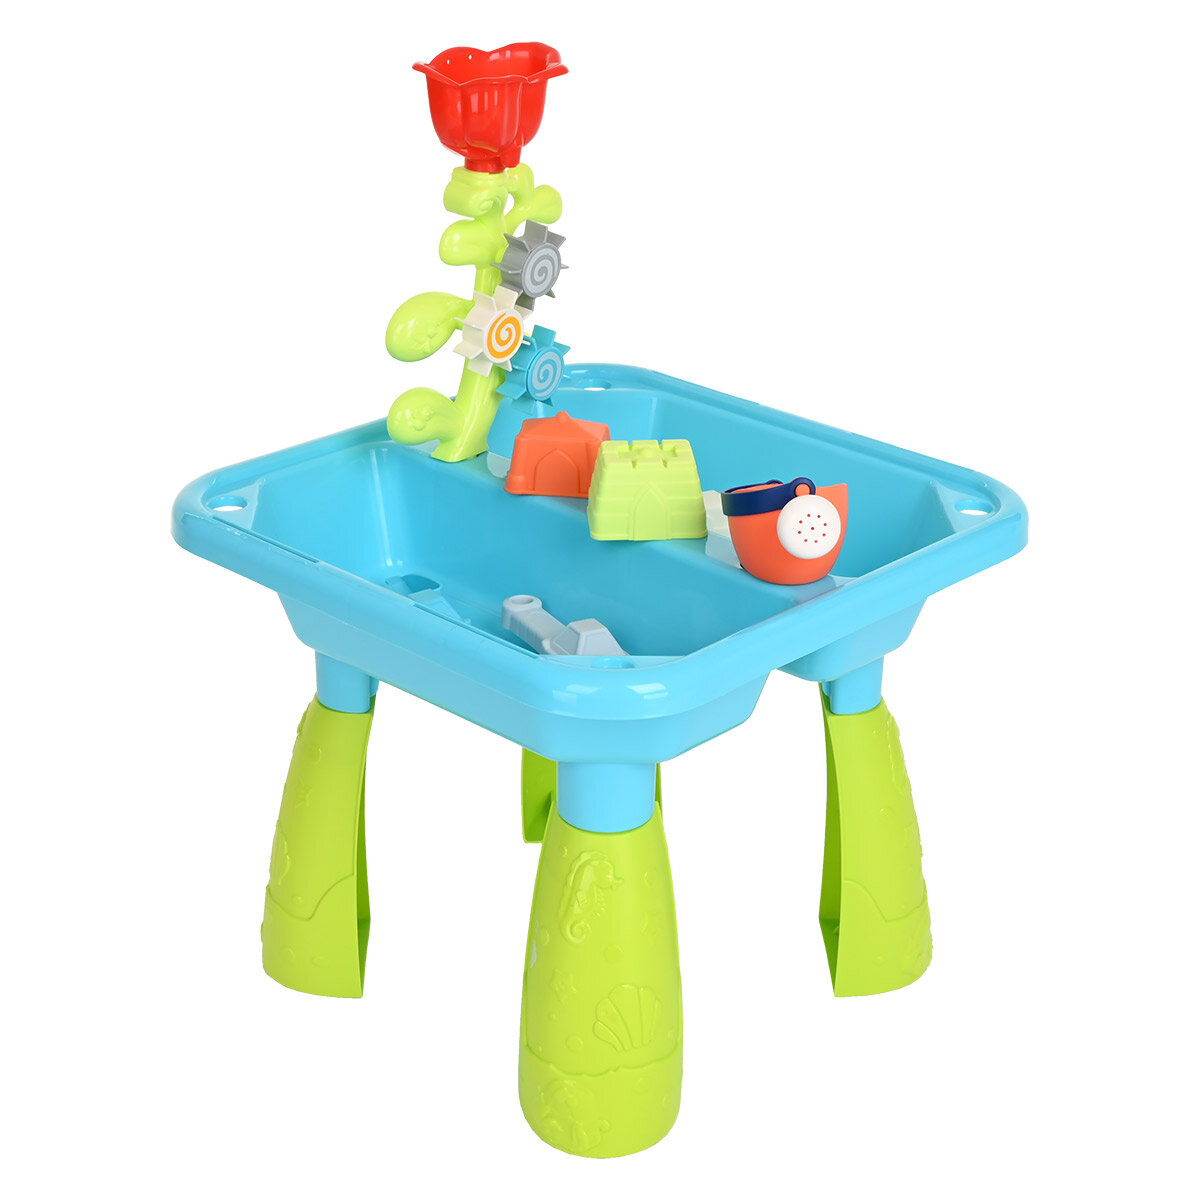 Песочный набор Paradiso Toys Summer Relax - столик с предметами для игр с песком и водой, высота 39 см